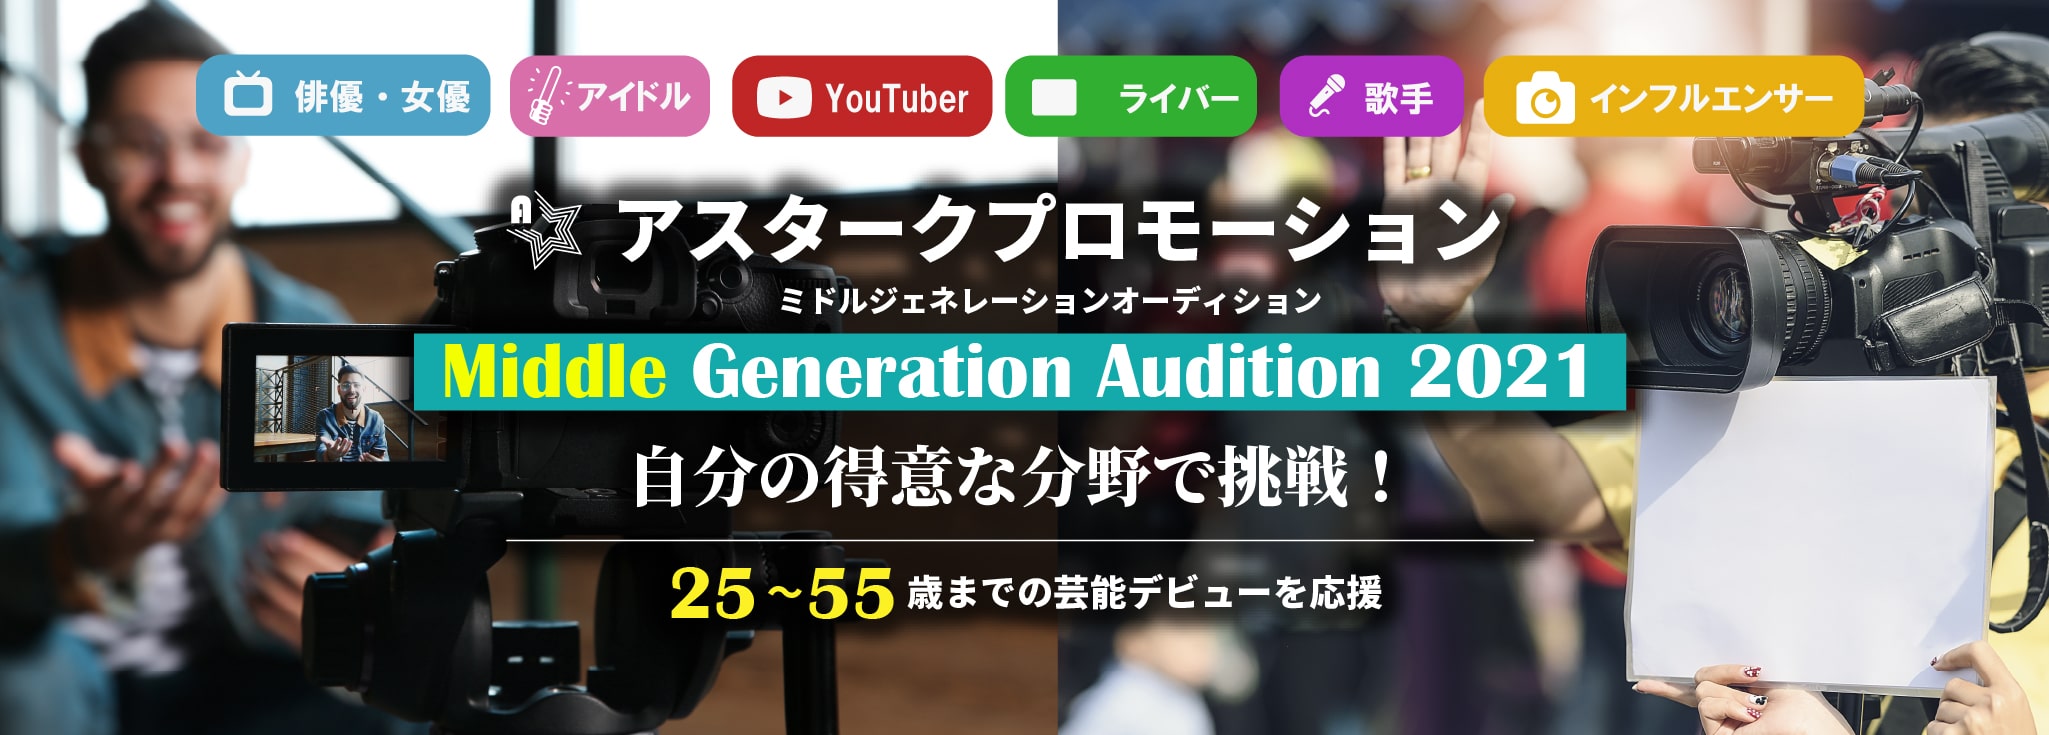 「俳優・女優」「アイドル」「Youtuber」「ライバー」「歌手」「インフルエンサー」自分の得意な分野で挑戦！25～55歳までの芸能デビューを応援！大阪で開催。ぜひご参加ください！Middle Generation Audition 2021（ミドルジェネレーションオーディション）